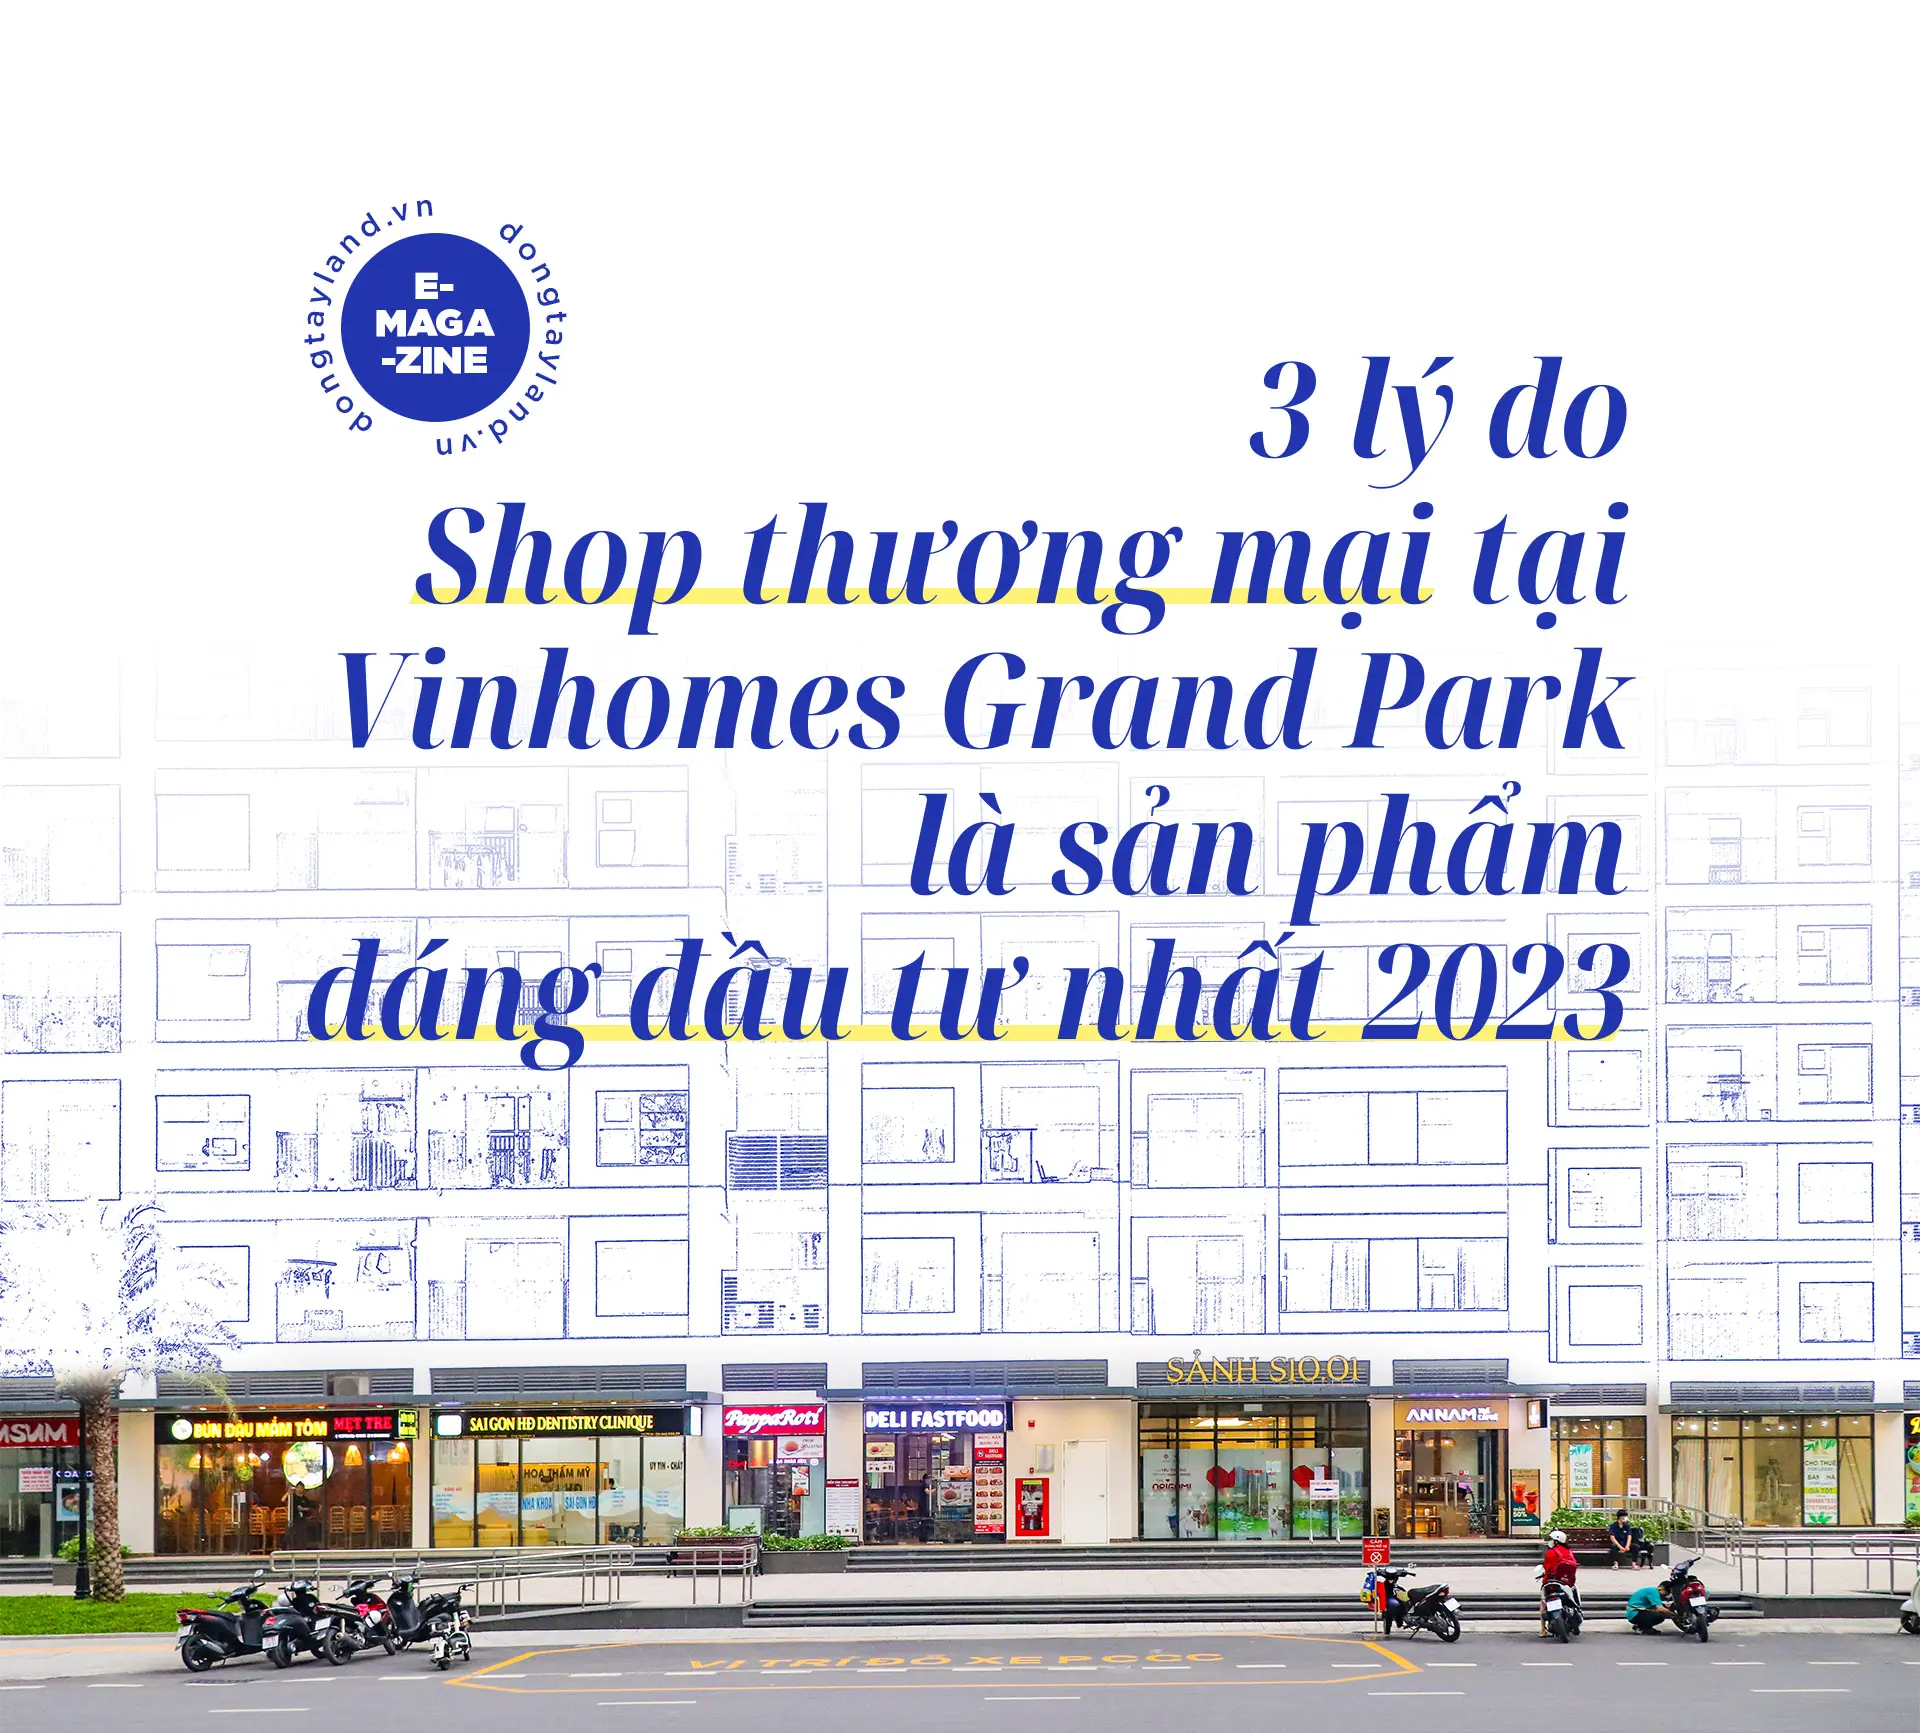 3 lý do Shop thương mại tại Vinhomes Grand Park đang là sản phẩm đáng đầu tư nhất năm 2023